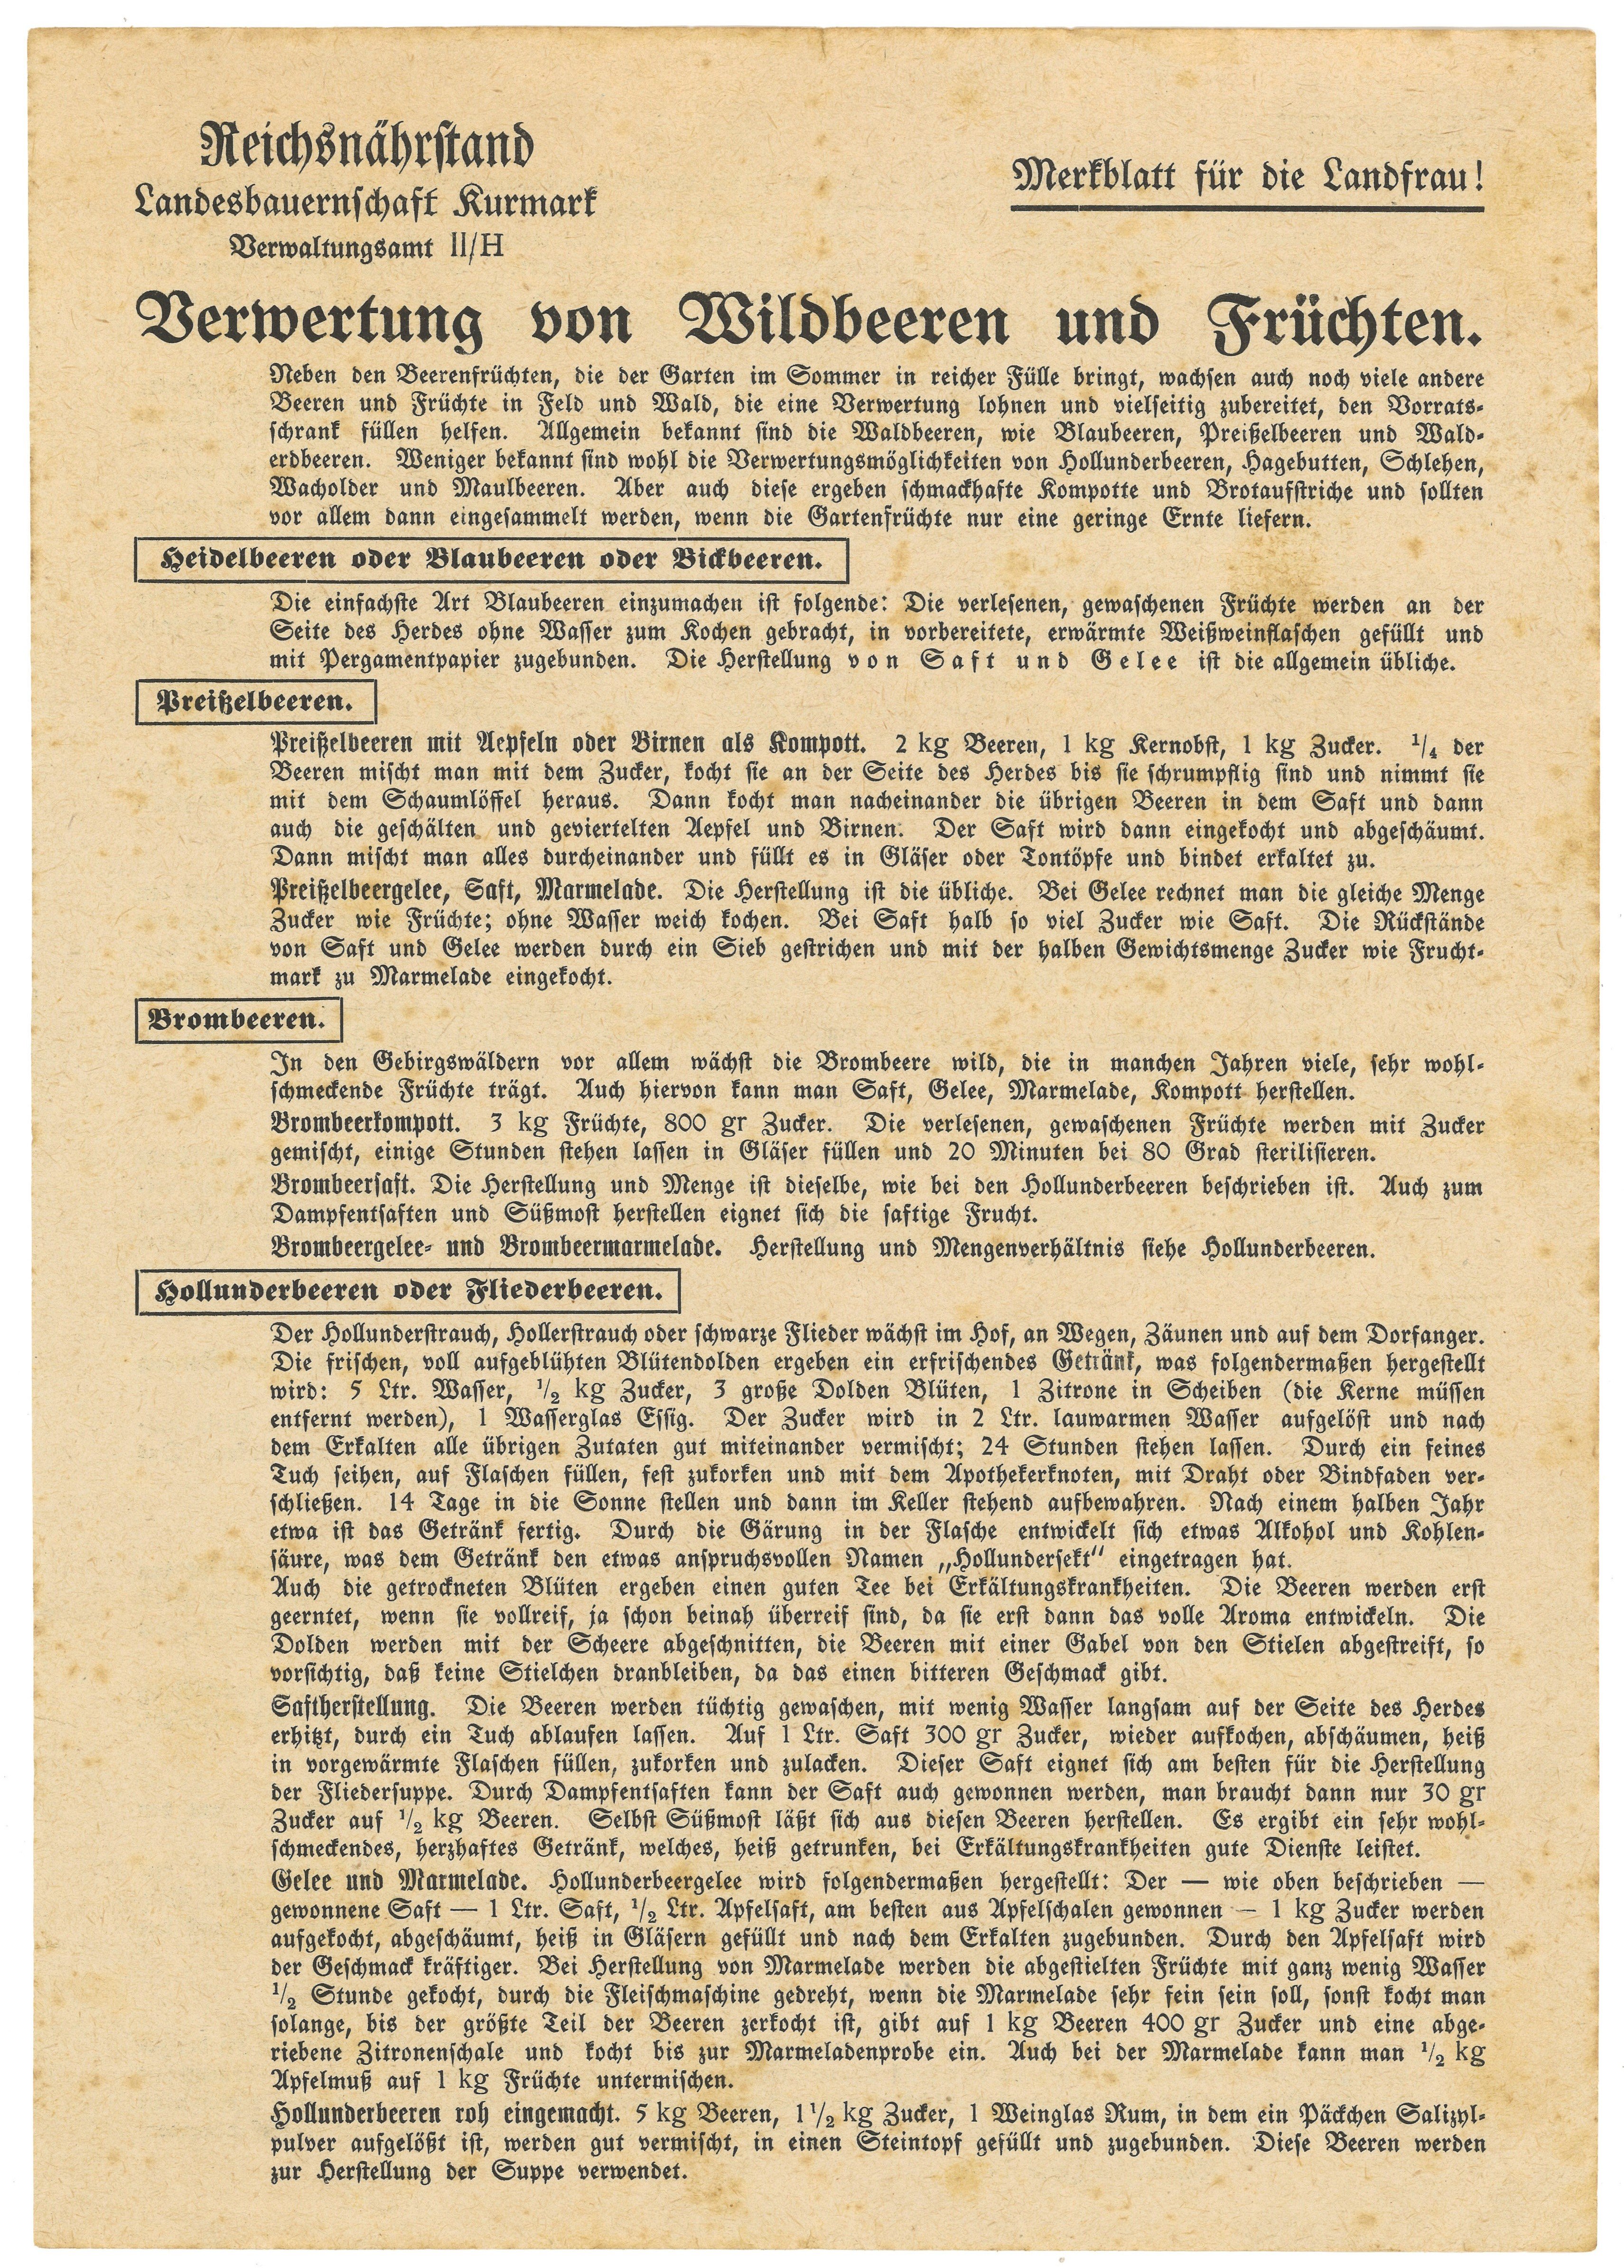 Merkblatt der Landesbauernschaft Kurmark über die Verwertung von Wildbeeren und Früchten (1938) (Landesgeschichtliche Vereinigung für die Mark Brandenburg e.V., Archiv CC BY)